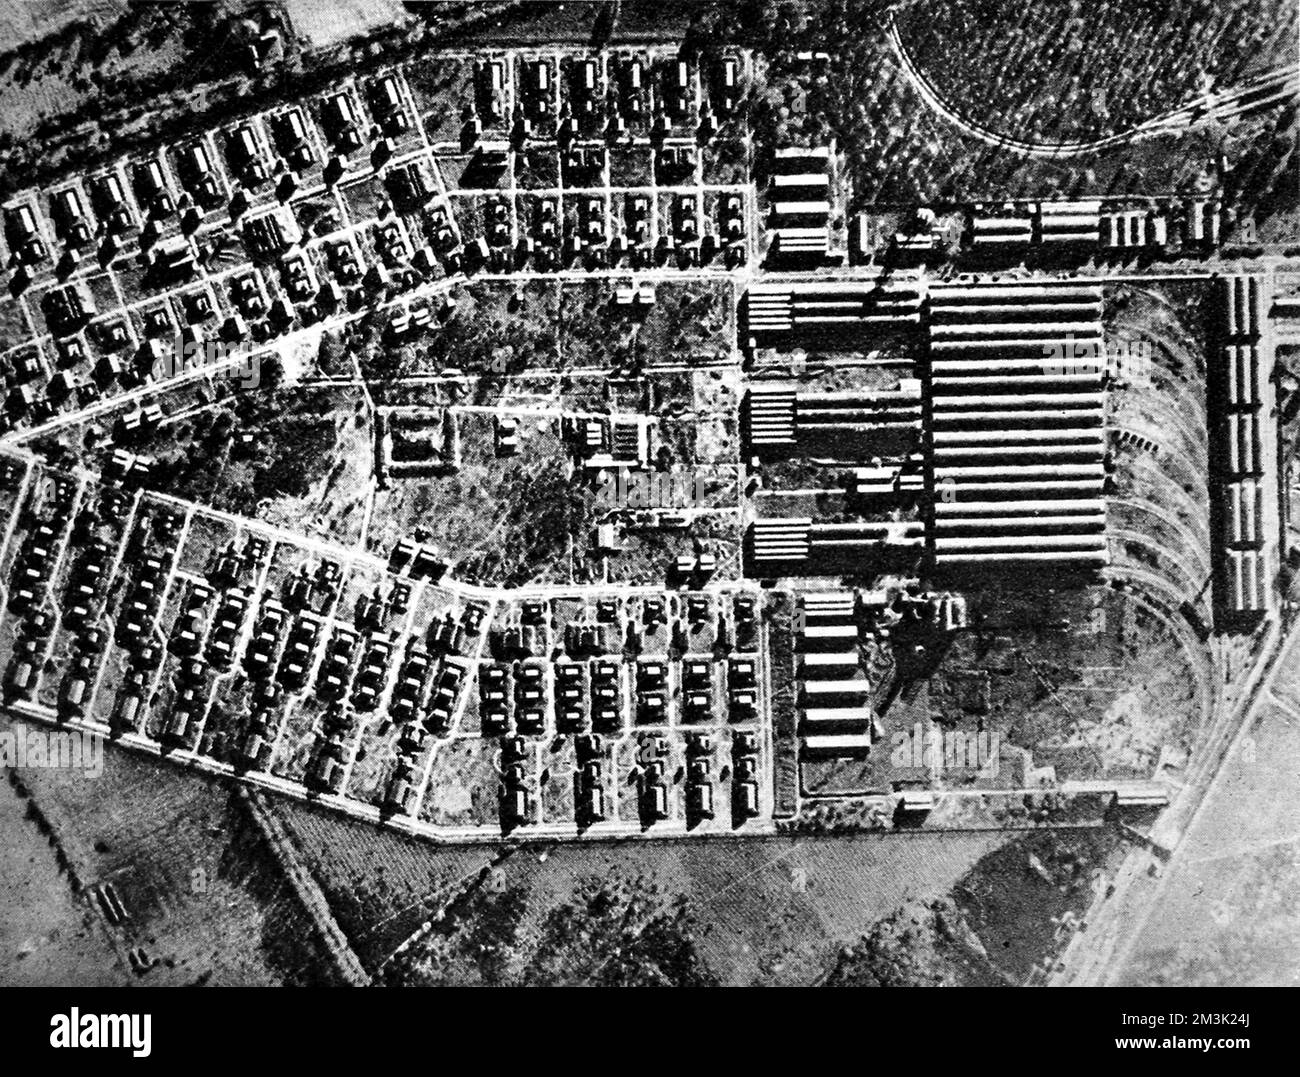 Luftaufnahme der Sprengstoffwerke und -Depots in Salbris, bei Orleans, in der ersten Hälfte des Jahres 1944. Dieses Depot befand sich im von den Nazis besetzten Frankreich und wurde von britischen Bombern angegriffen, kurz nachdem dieses Foto gemacht wurde. Datum: 1944 Stockfoto